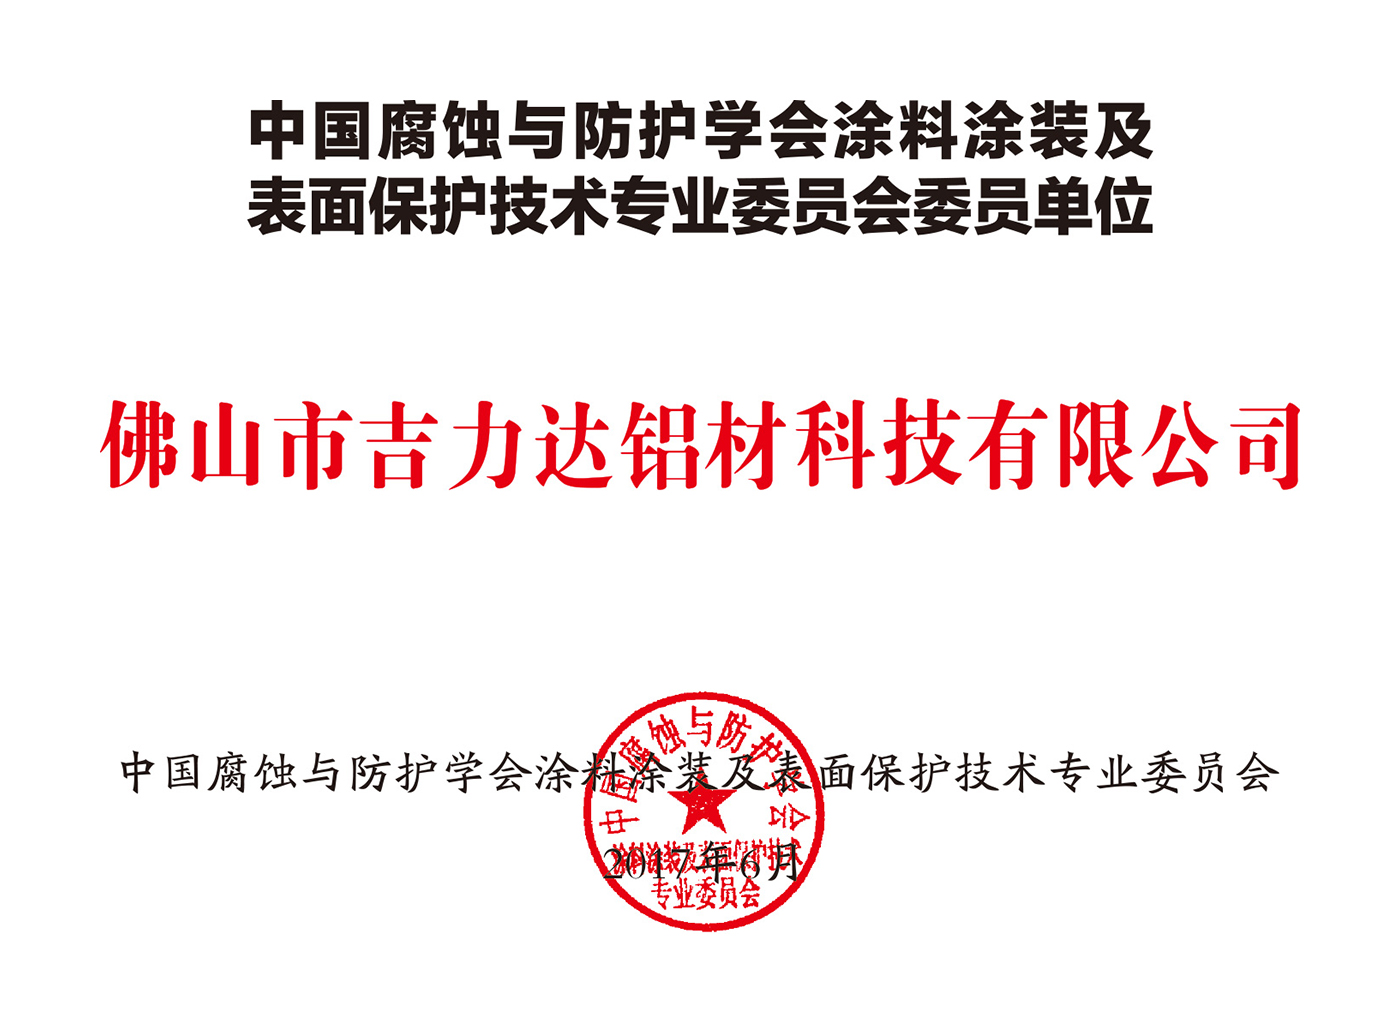 中國腐蝕與防護學會塗料塗裝及表面保護技術專業委員會委員單位